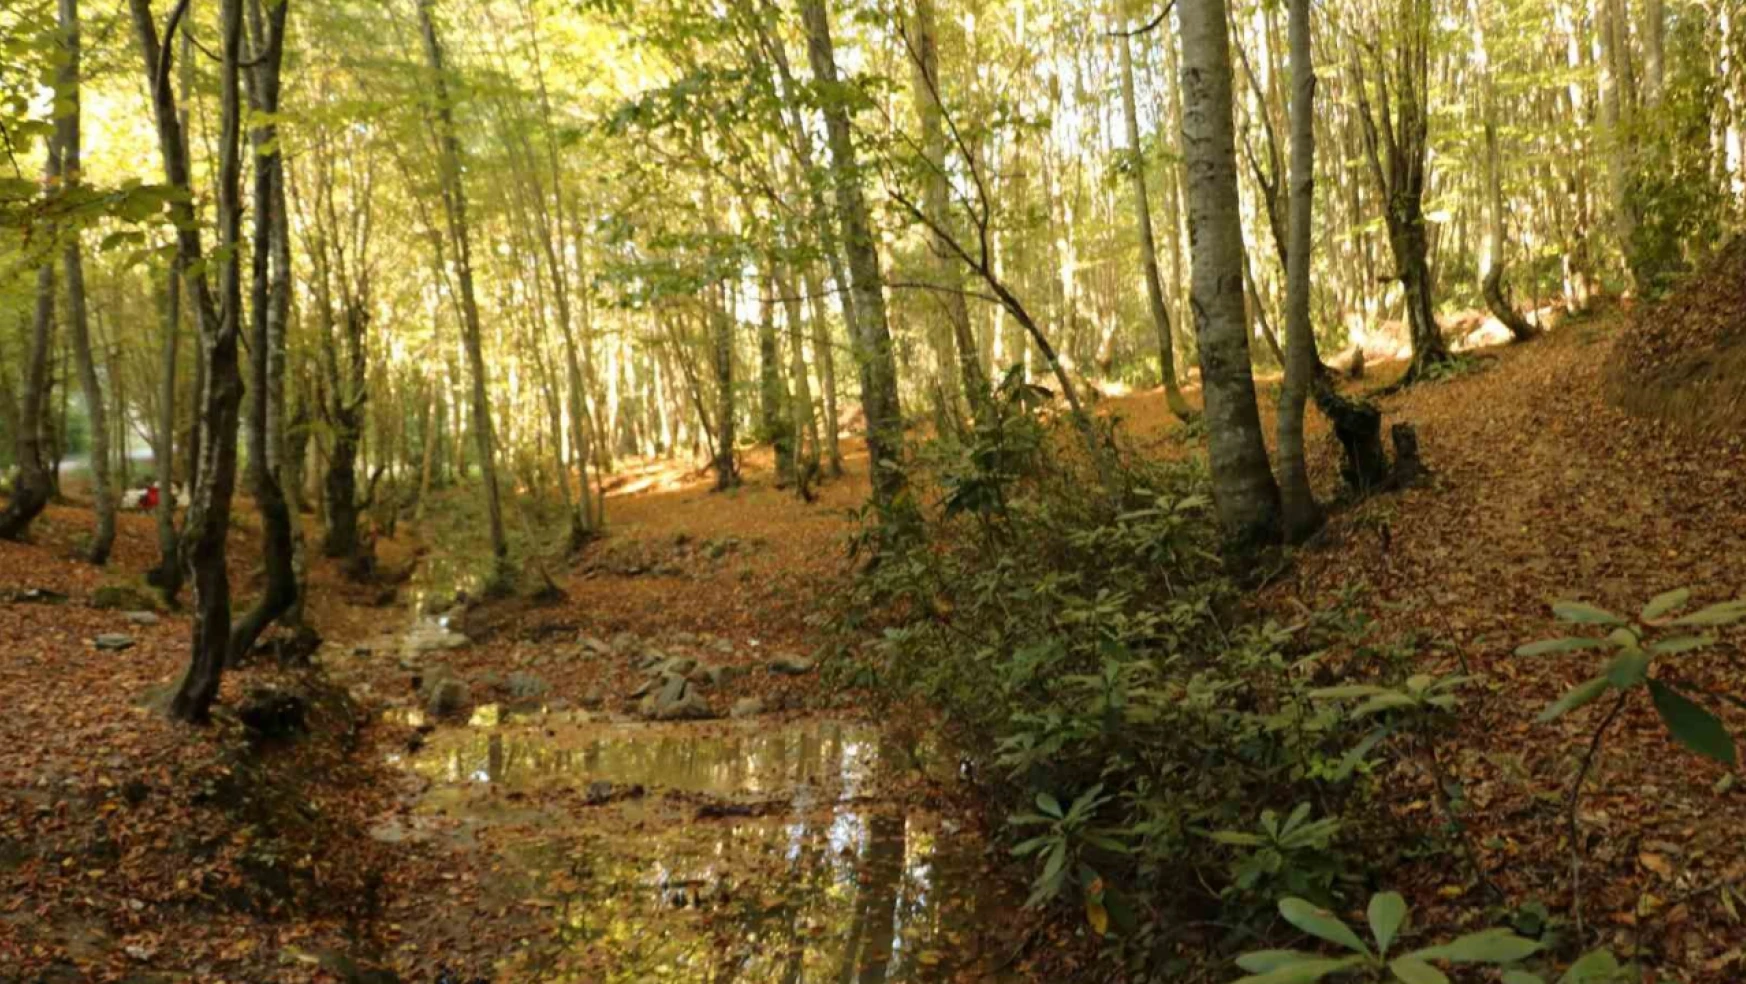 Zonguldak ormanlarında sonbahar güzelliği